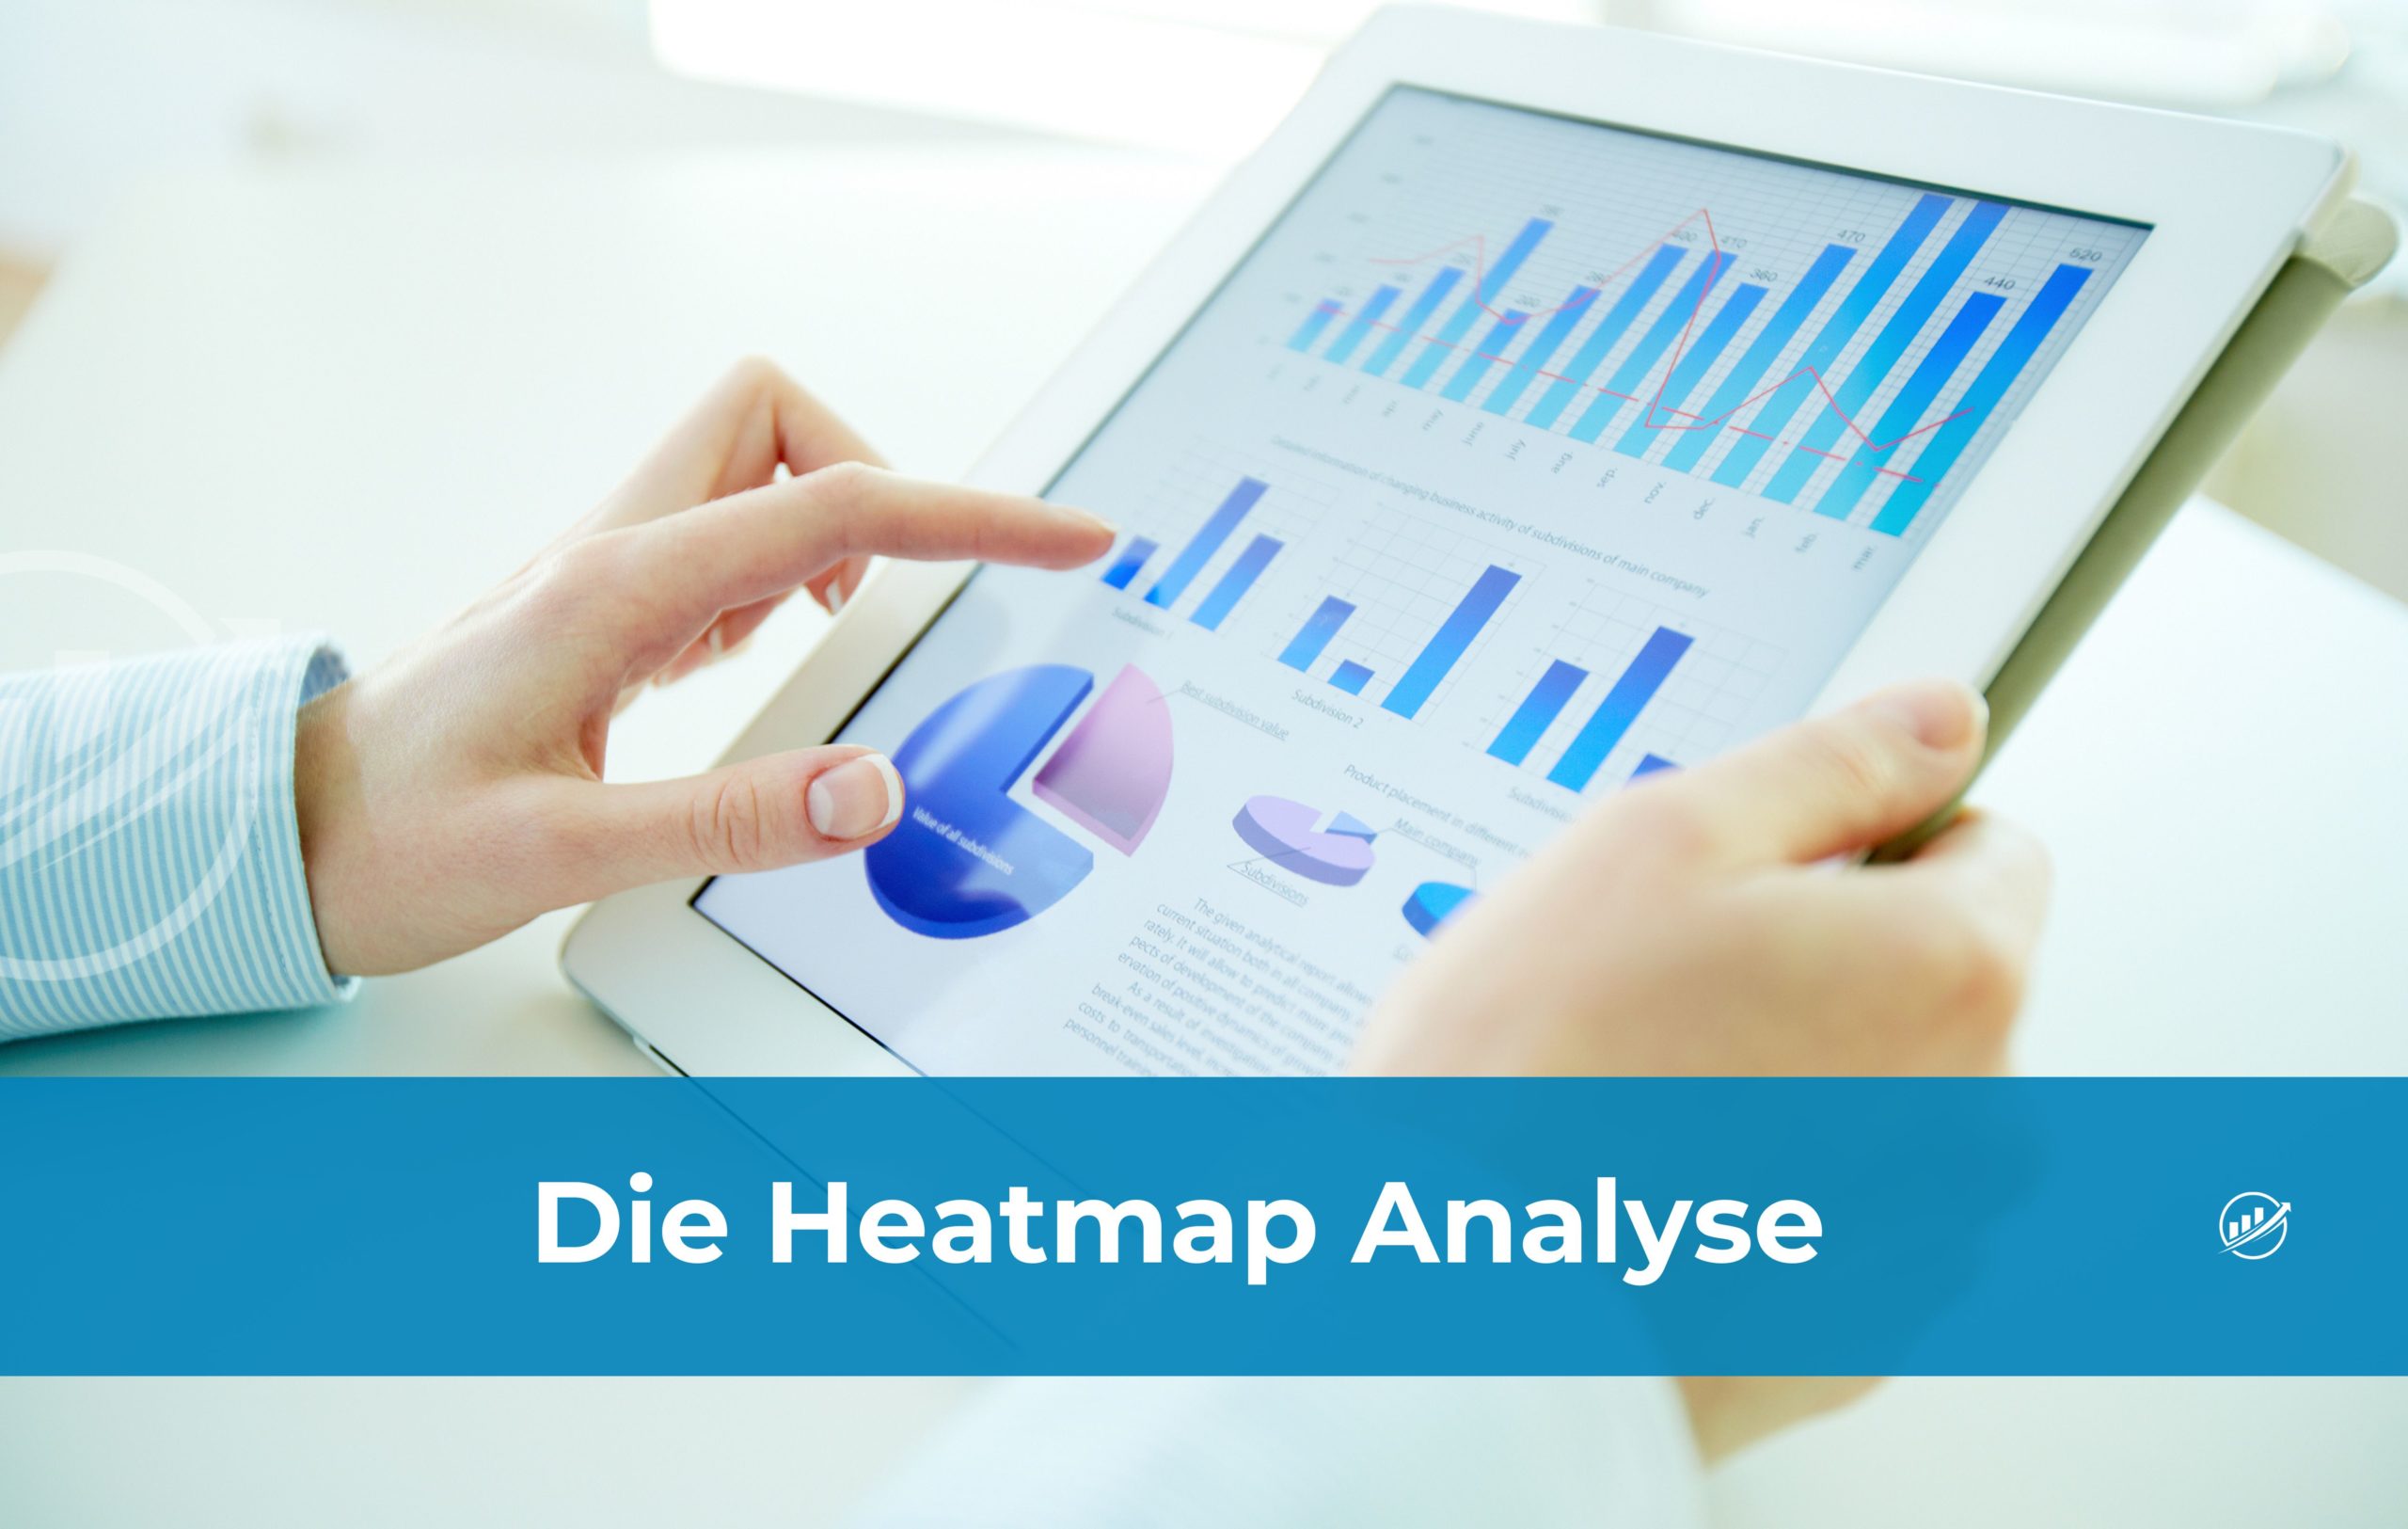 Die Heatmap Analyse